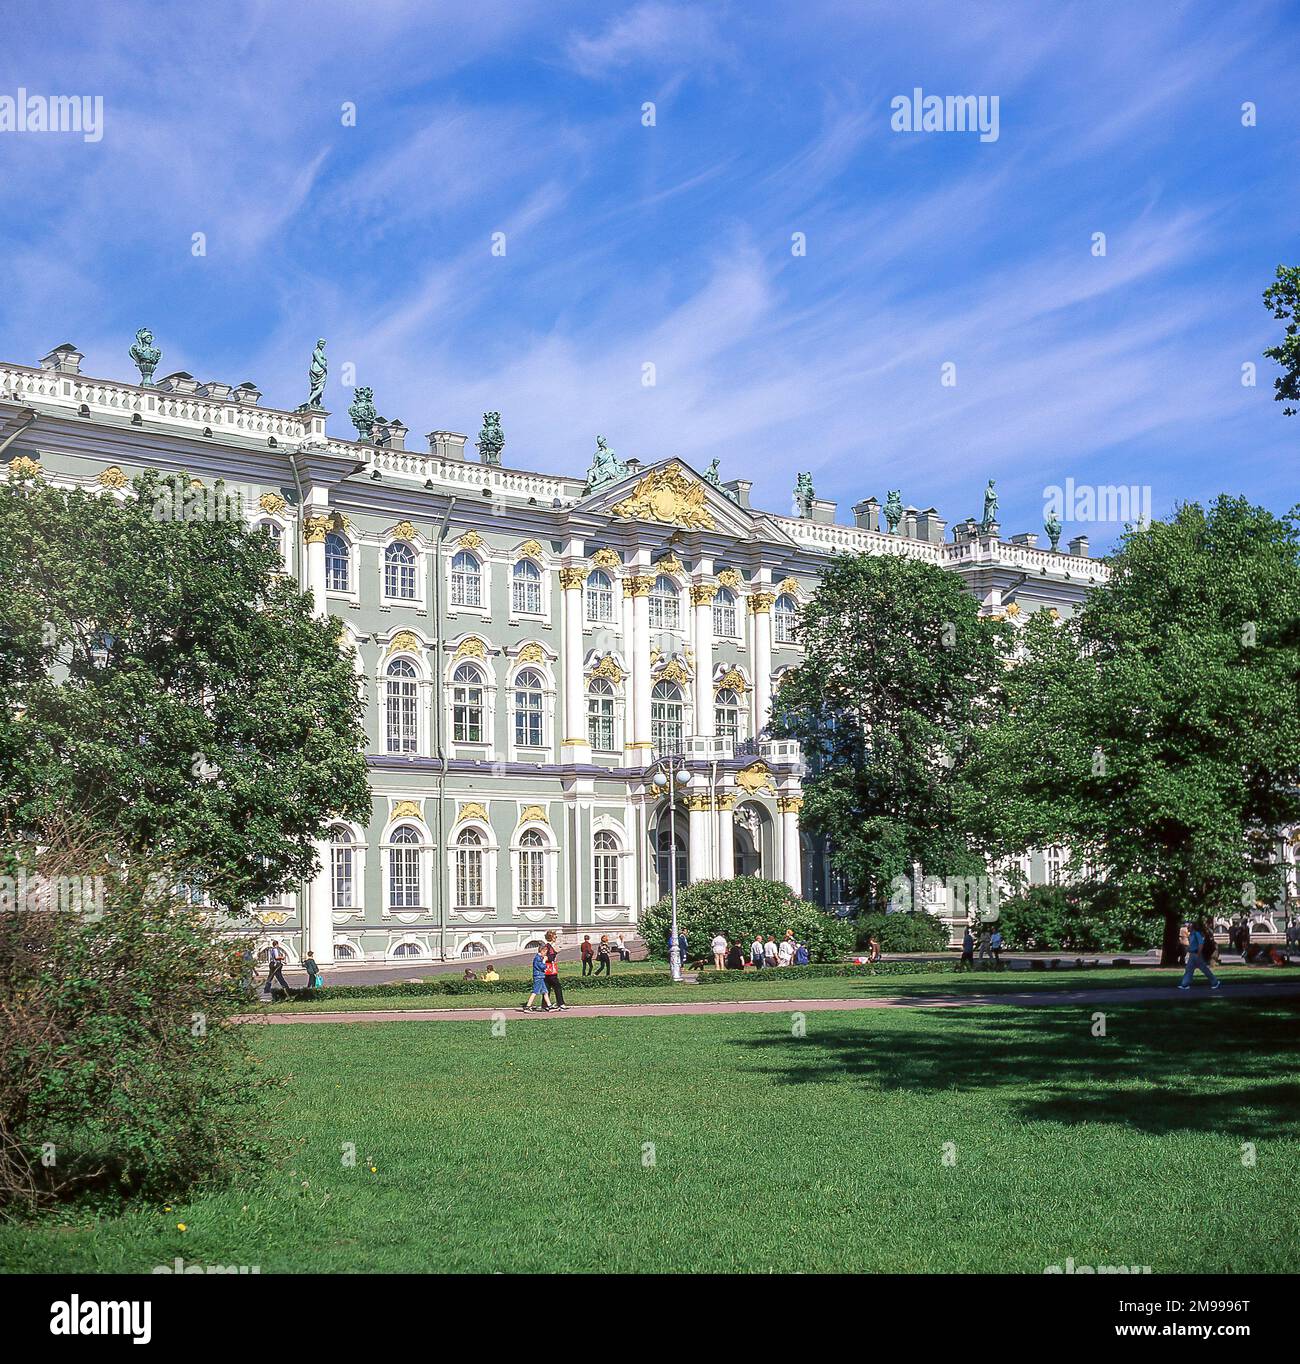 Musée de l'Ermitage, place du Palais, Saint-Pétersbourg, région du Nord-Ouest, Russie Banque D'Images